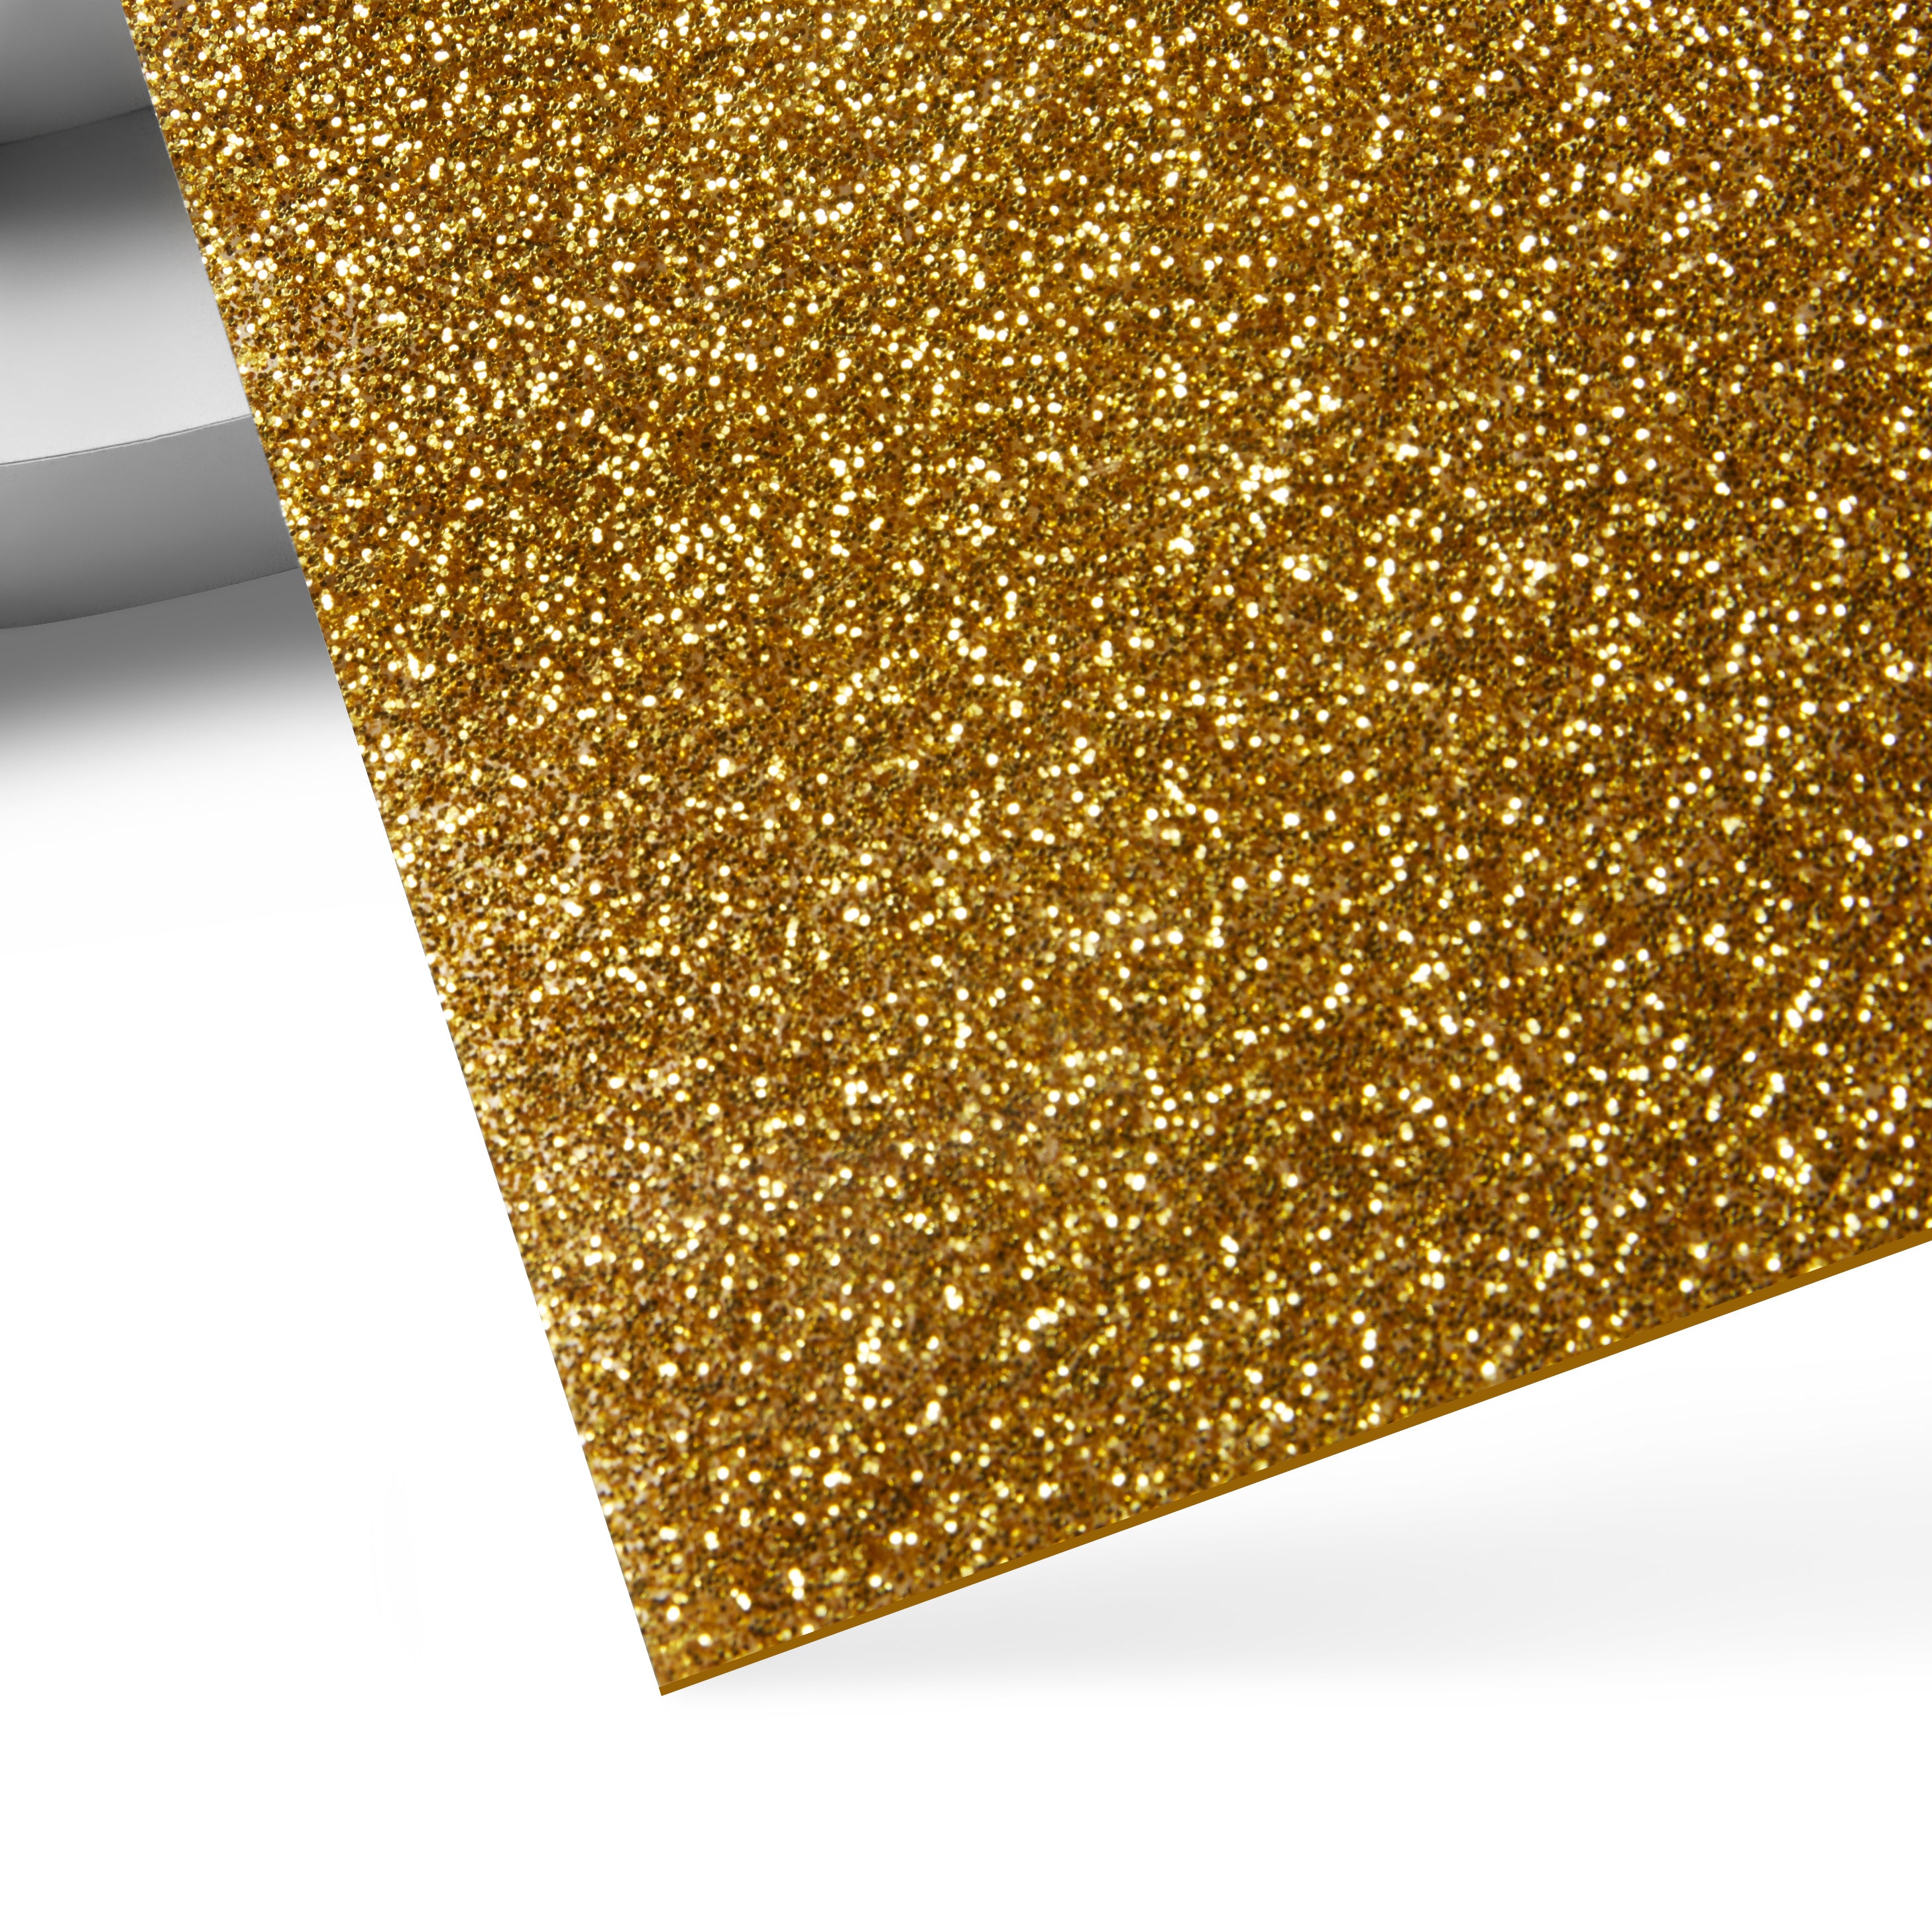 Feuilles adhésives brillantes Métalliques A5 (10pc) - Xcut Xtra's Adhesive  Glitter Sheets Metallics